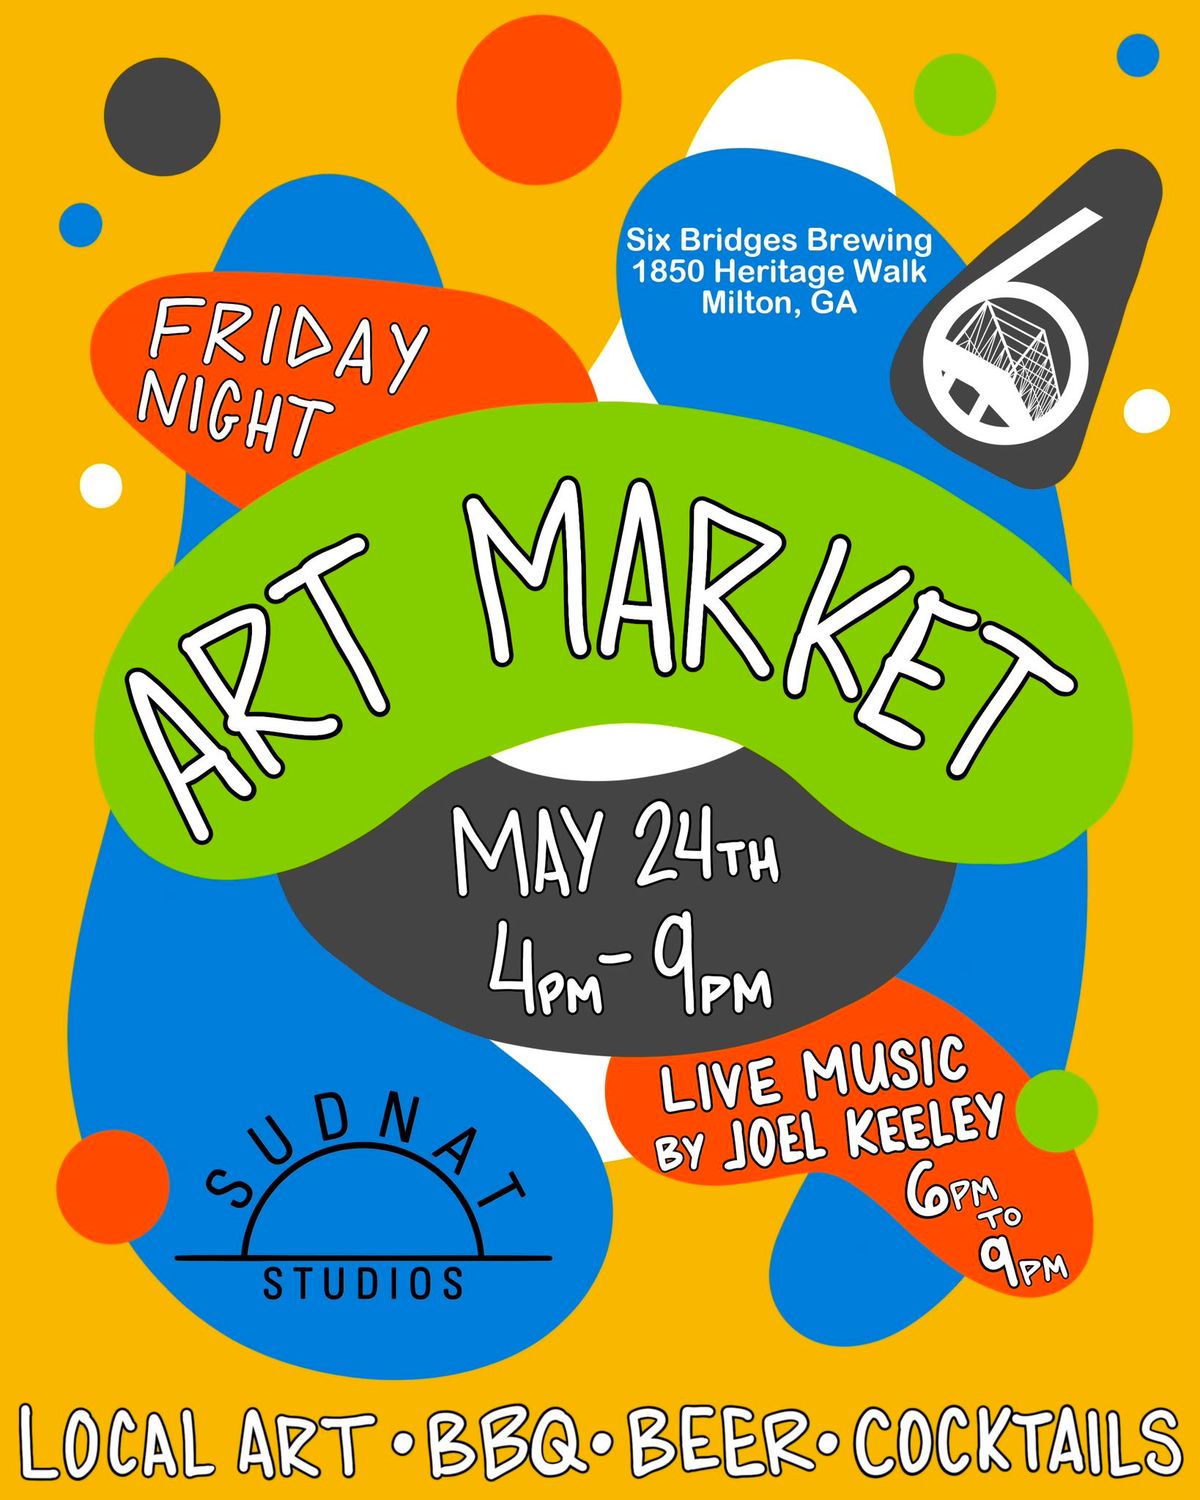 Friday Night Art Market